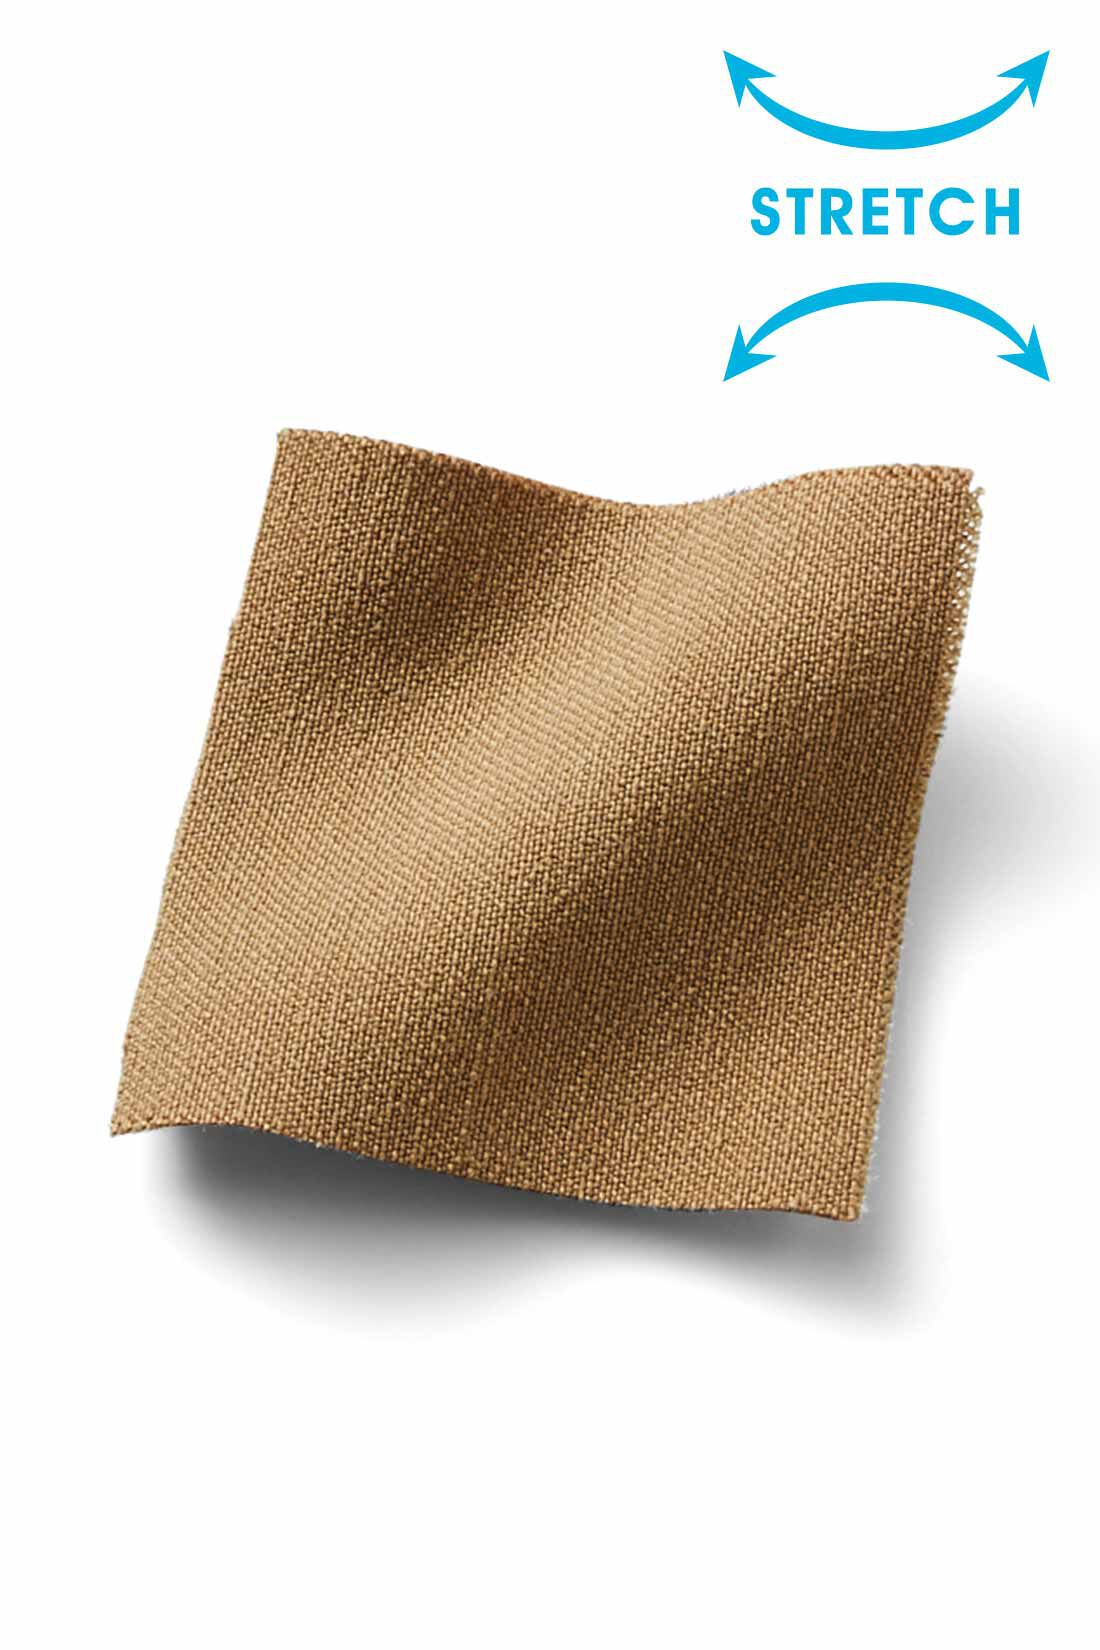 IEDIT|IEDIT[イディット]　ウエストメッシュで快適 ストレッチ布はく素材の美脚レギンスパンツ〈ベージュ〉|カットソーみたいなはき心地ながら、きちんと見えもかなう布はく素材。 ※お届けするカラーとは異なります。